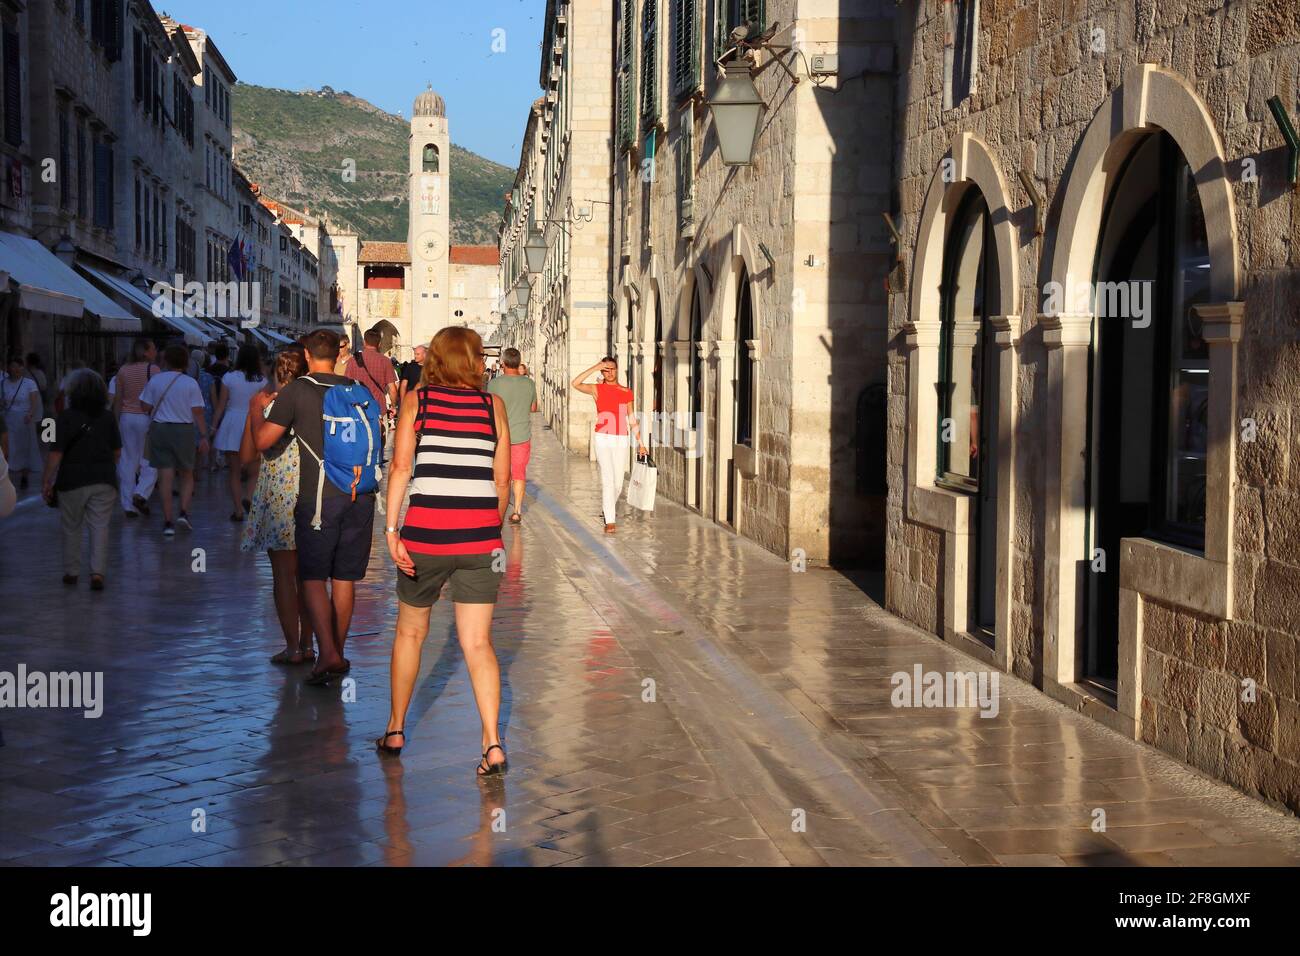 DUBROVNIK, CROAZIA - 26 LUGLIO 2019: I turisti visitano Stradun strada lastricata di pietra calcarea lucida nella città vecchia di Dubrovnik, un sito patrimonio dell'umanità dell'UNESCO. Foto Stock